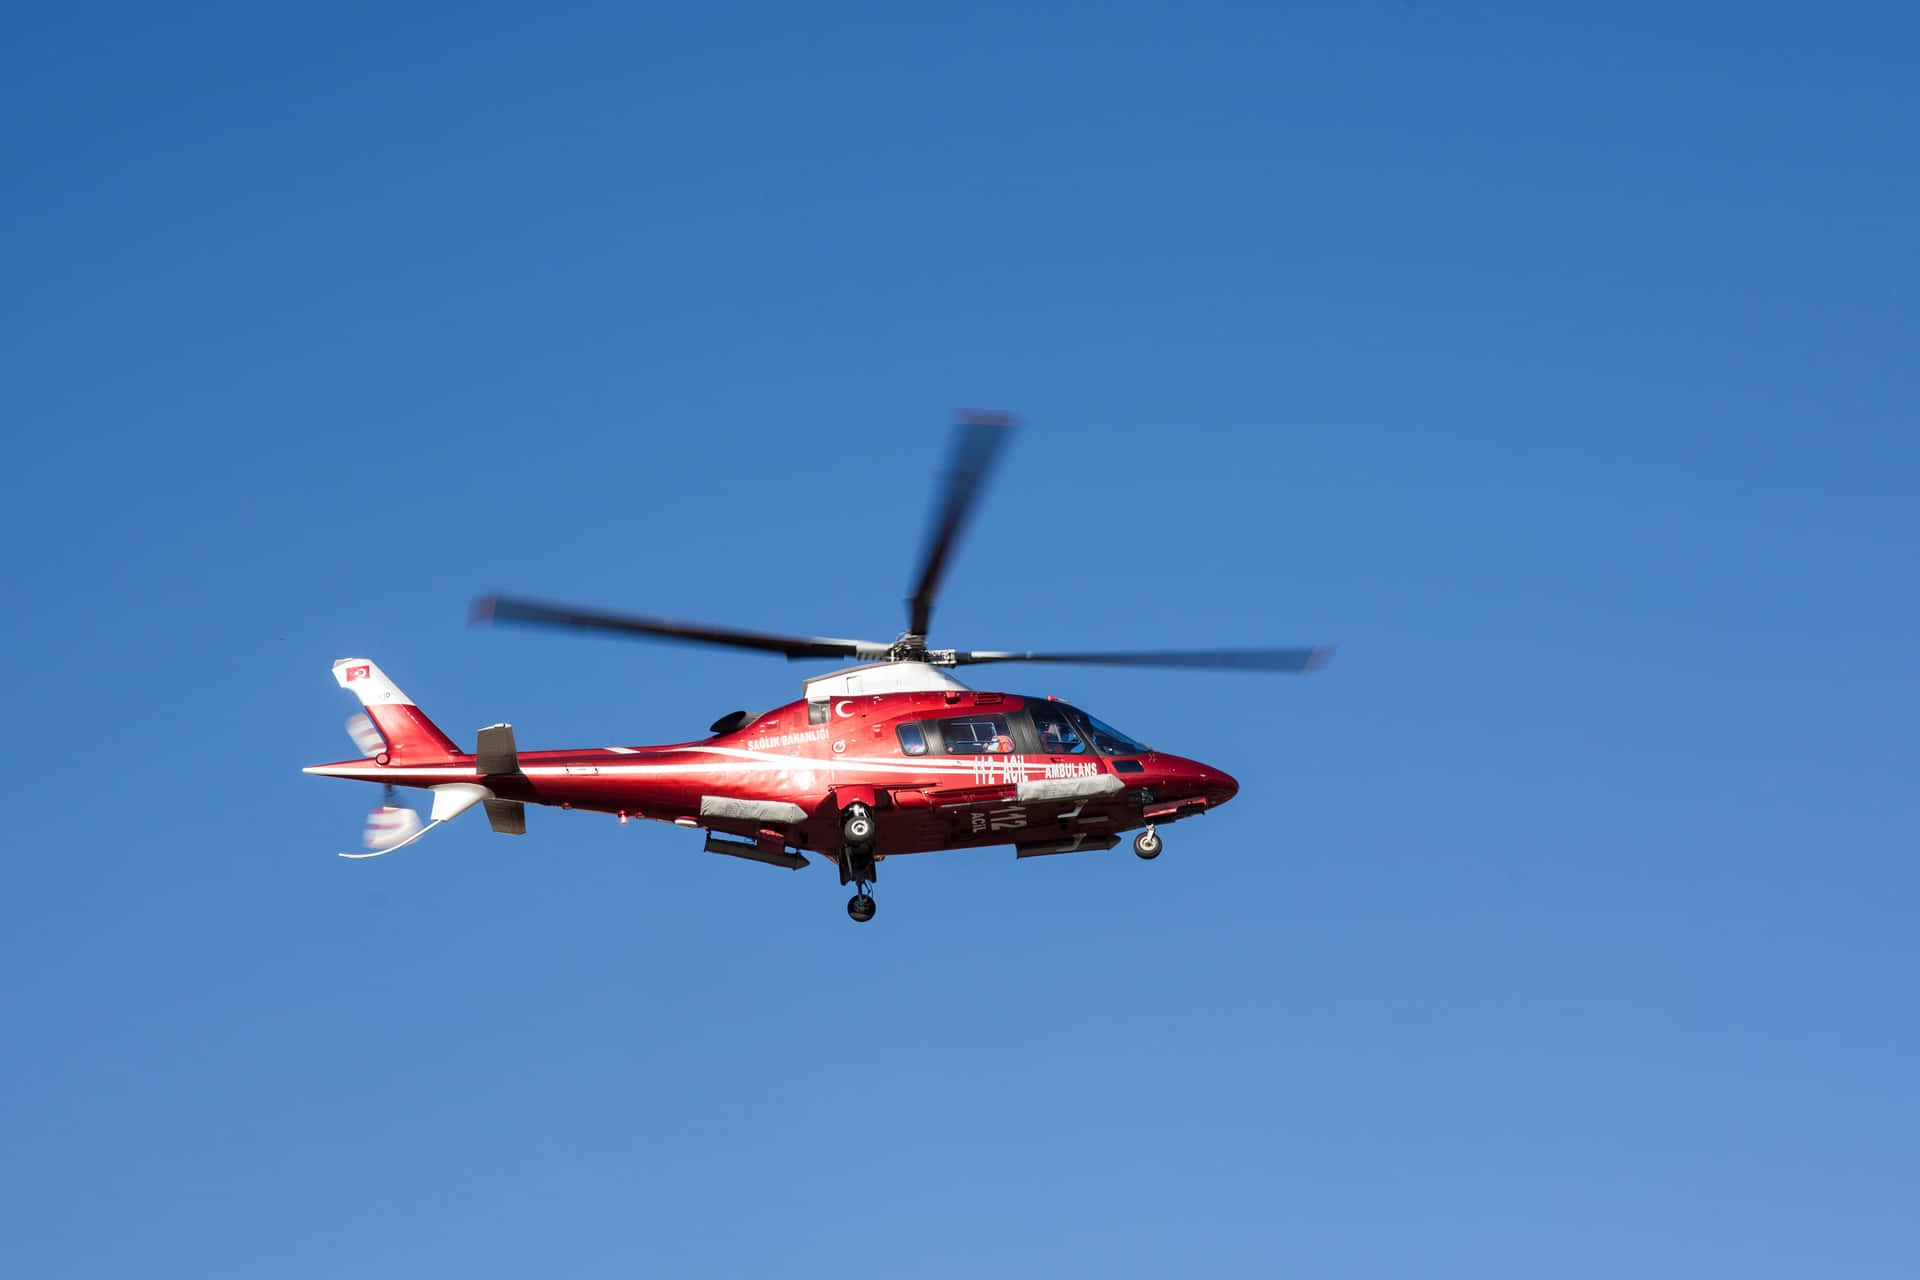 Hubschrauber4500 X 3001 Bild.